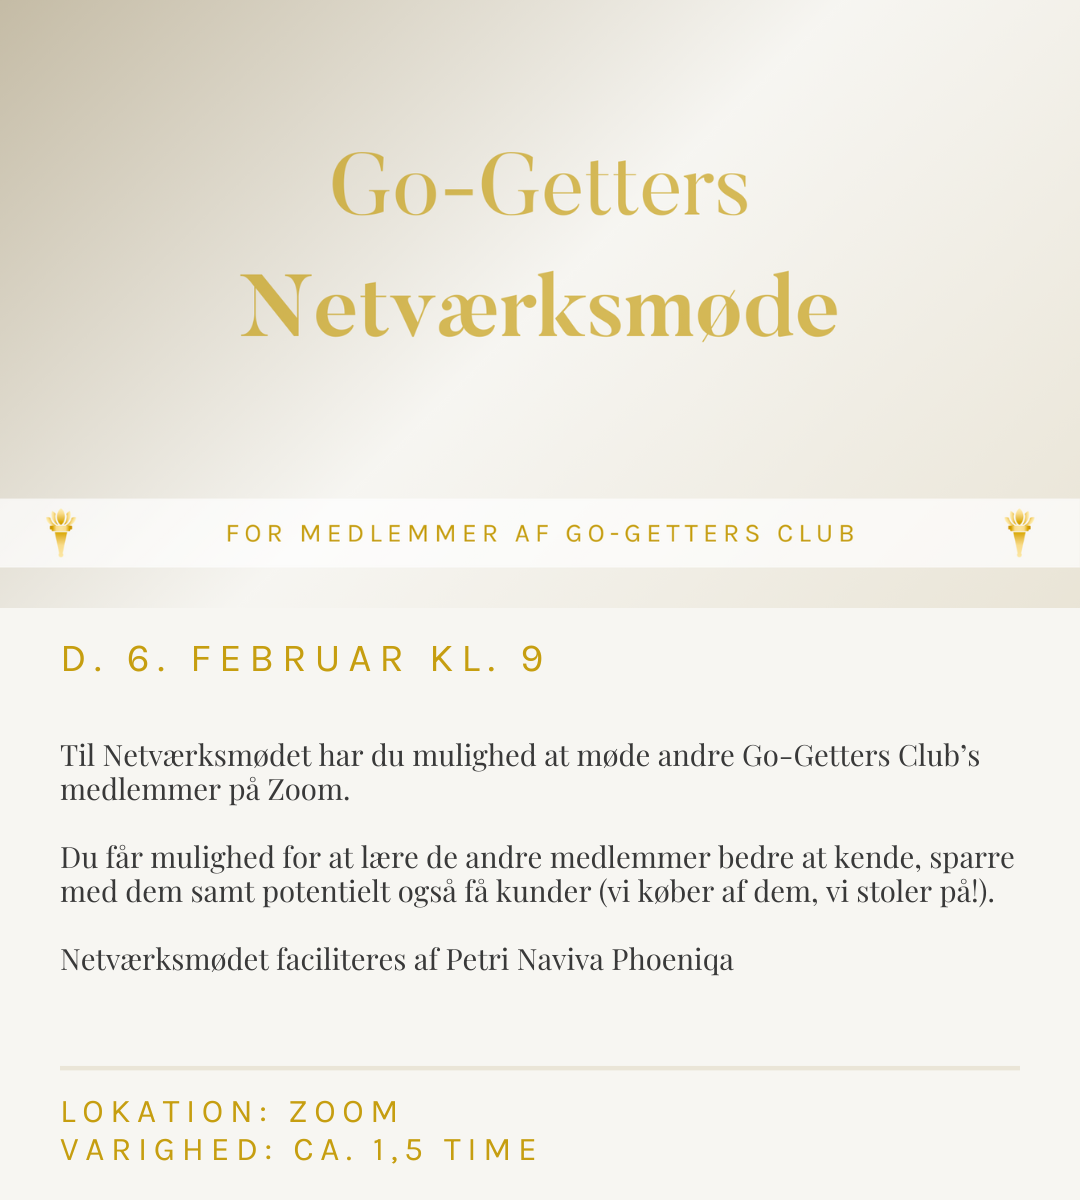 Go-Getters netværksmøde februar